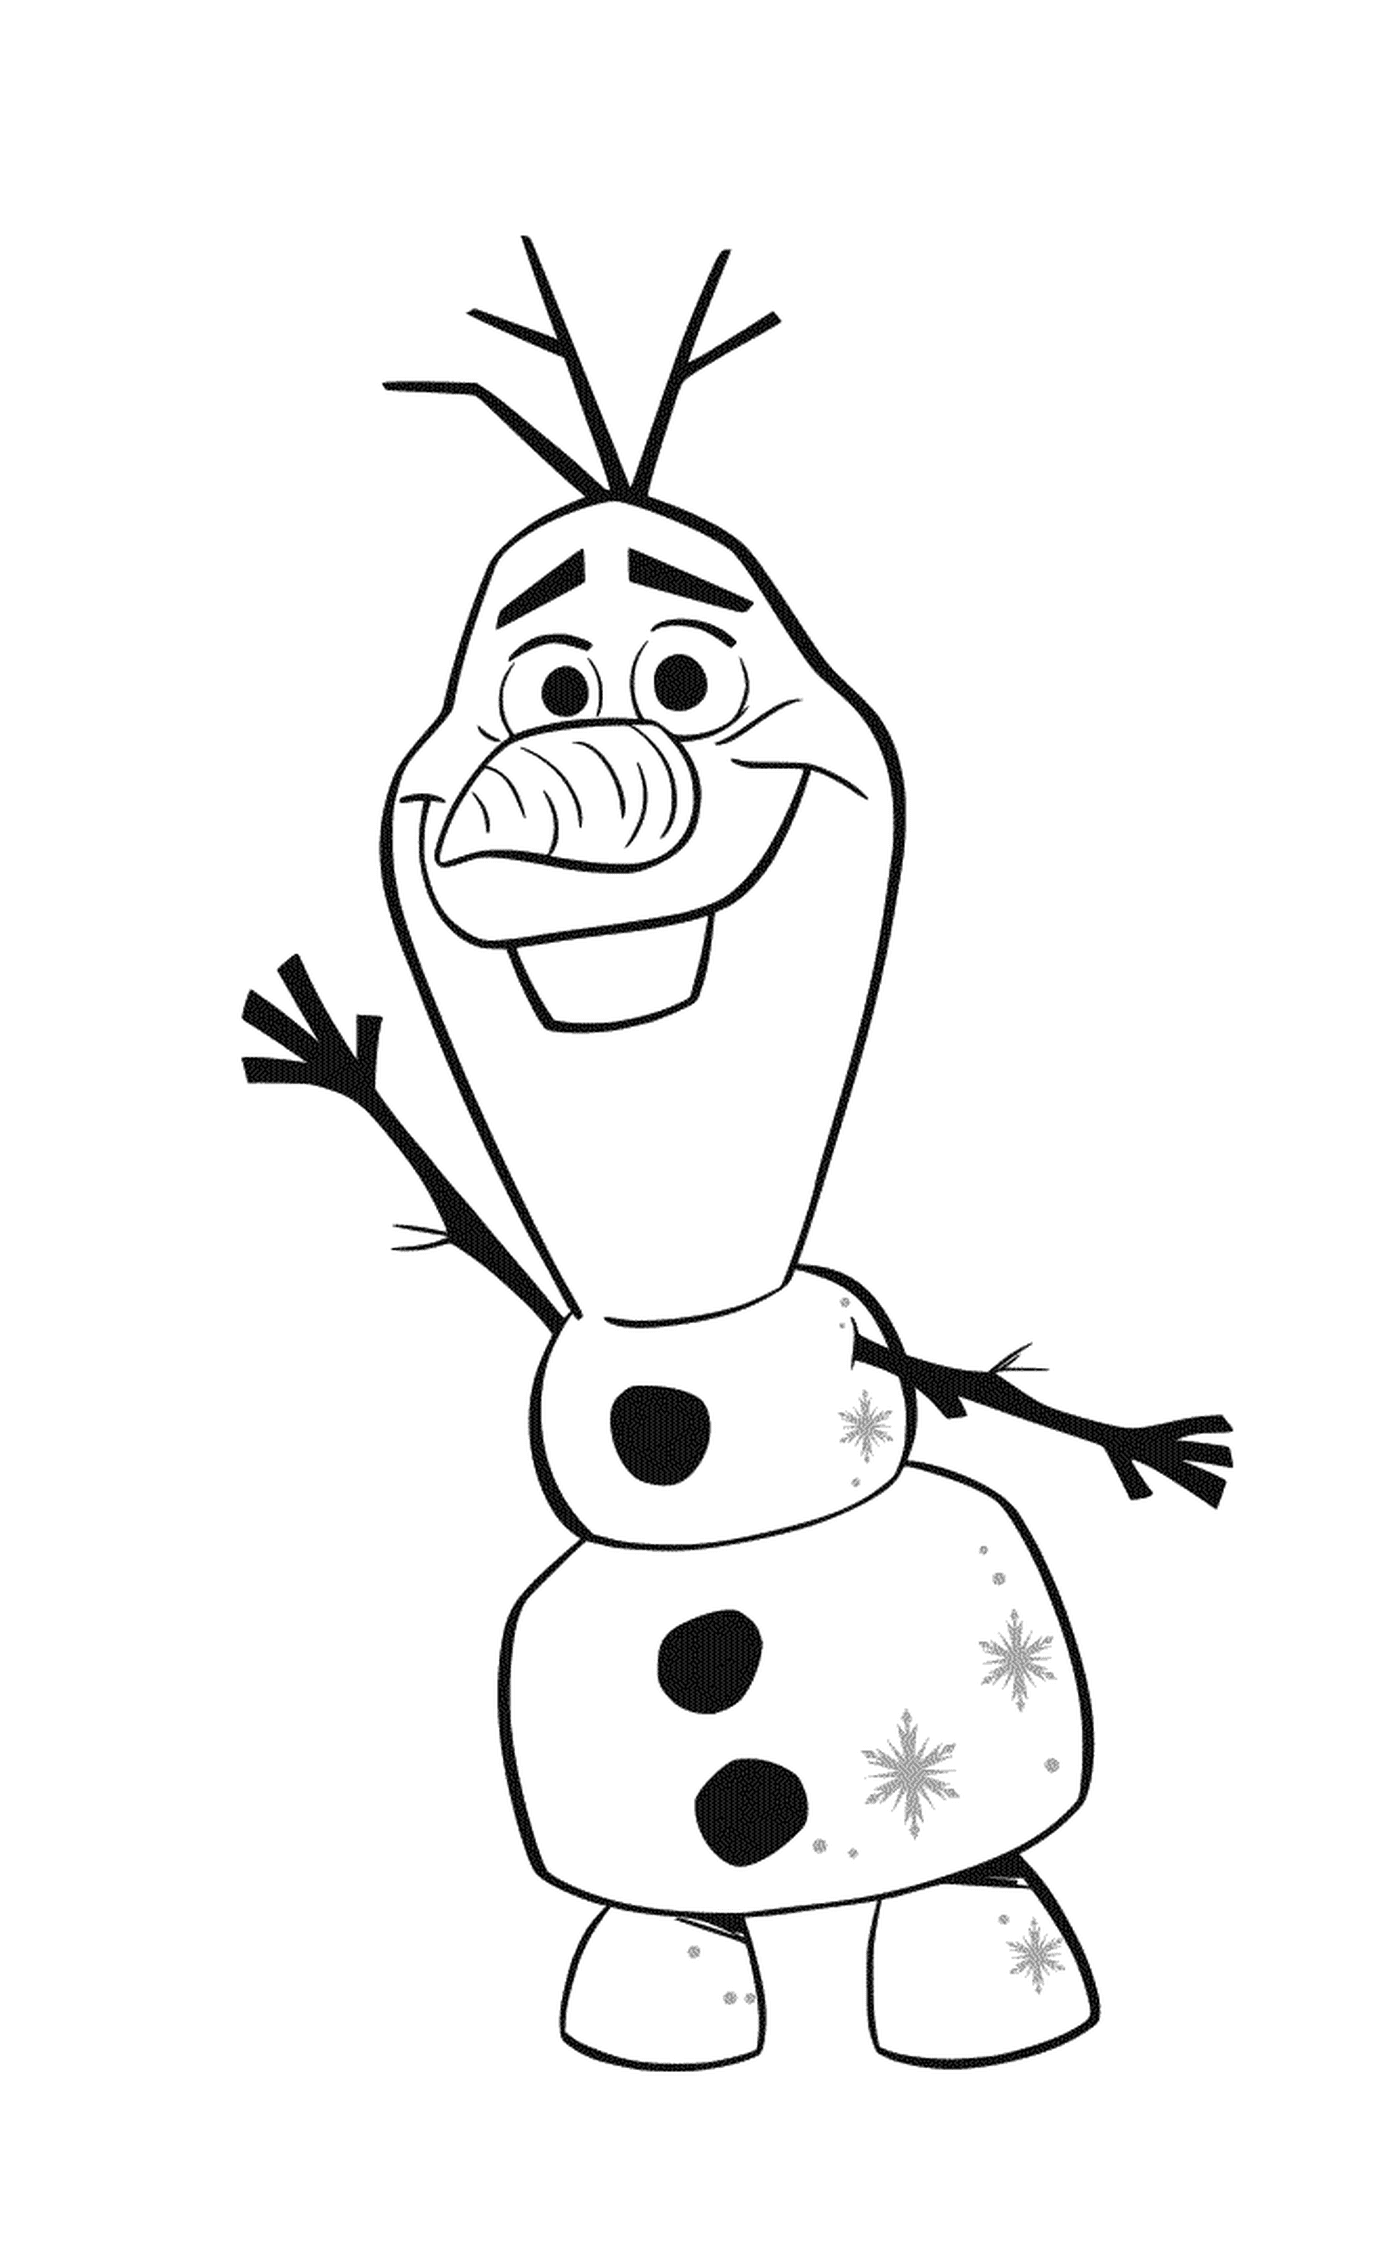  Олаф, анимационный снеговик детства Эльзы и Анны 